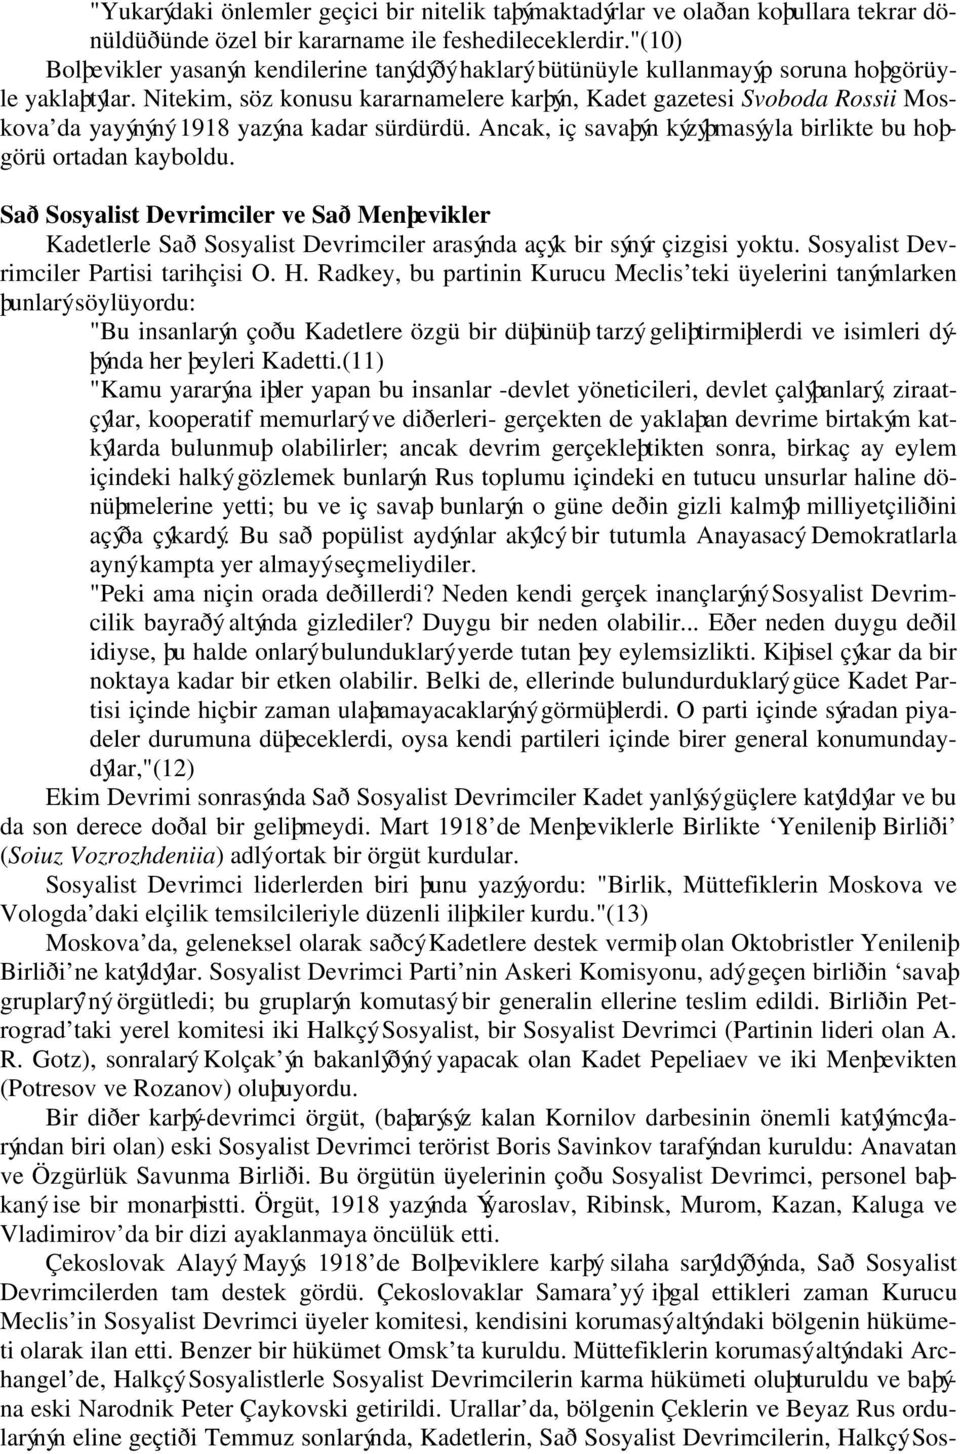 Nitekim, söz konusu kararnamelere karþýn, Kadet gazetesi Svoboda Rossii Moskova da yayýnýný 1918 yazýna kadar sürdürdü. Ancak, iç savaþýn kýzýþmasýyla birlikte bu hoþgörü ortadan kayboldu.